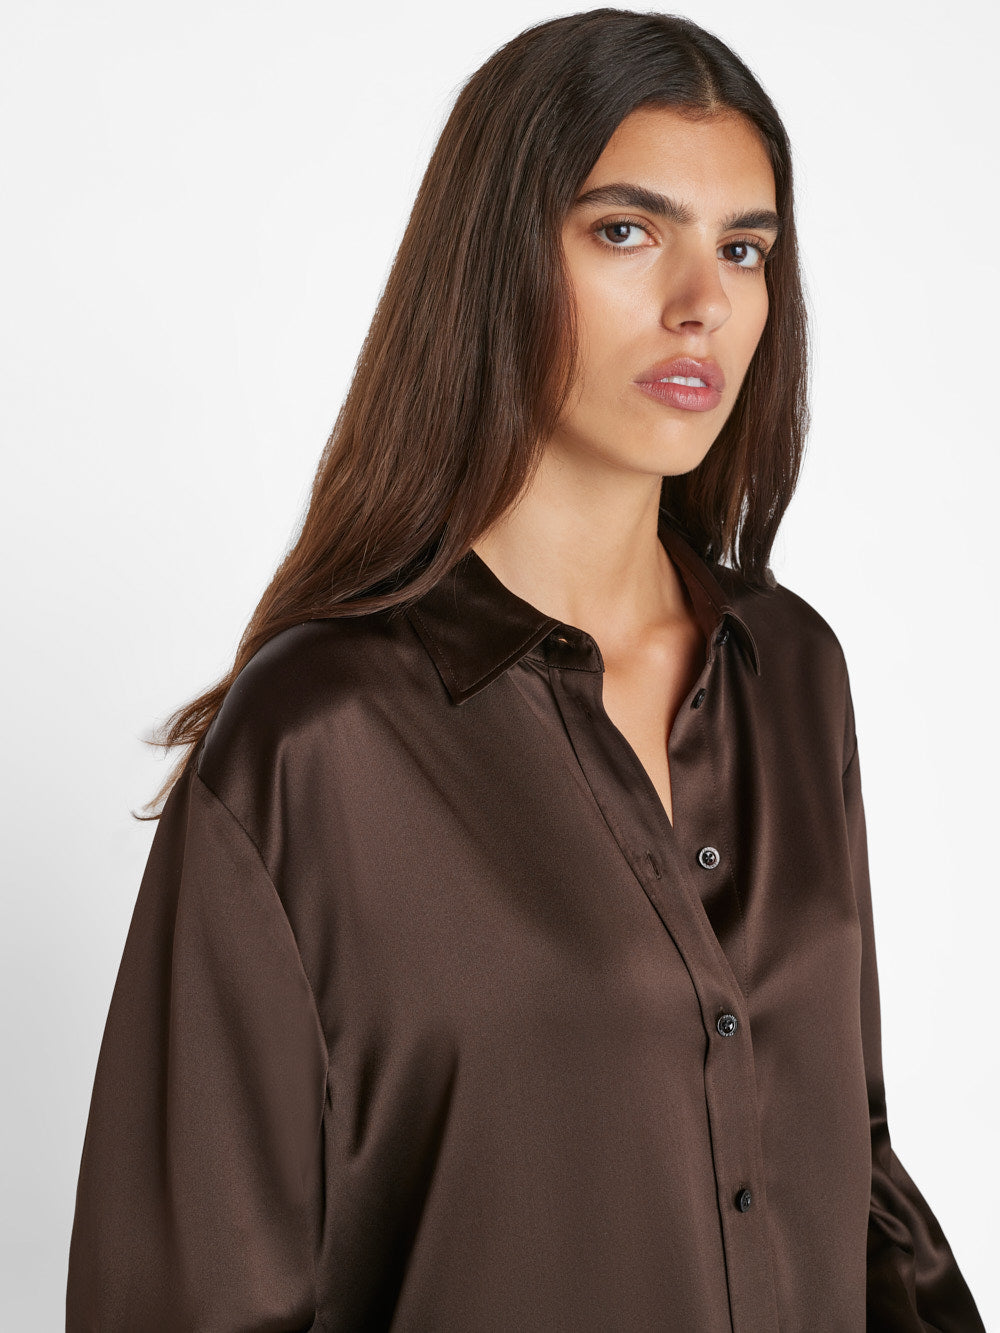 Satin Shirt Midnight Blue, Women's Silk Satin Shirt, Long Sleeve Oversized  Button-up Satin Shirt -  Denmark